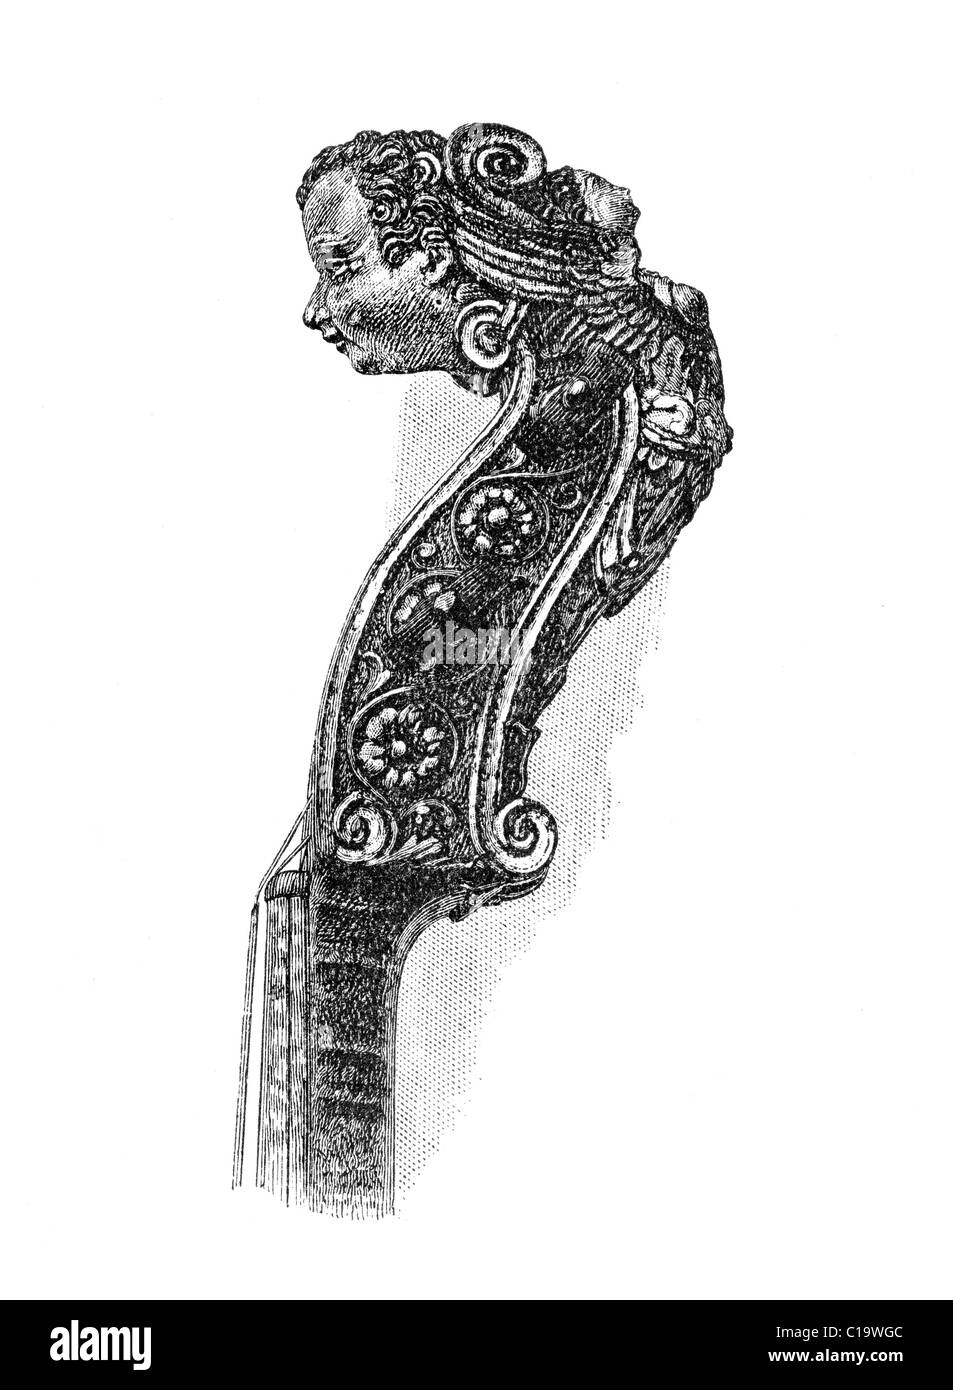 Cuello y desplazarse de Ole Bull Gaspar Di Salo violín. Originalmente publicado en enero de 1881 en Harper's nueva revista mensual. Foto de stock